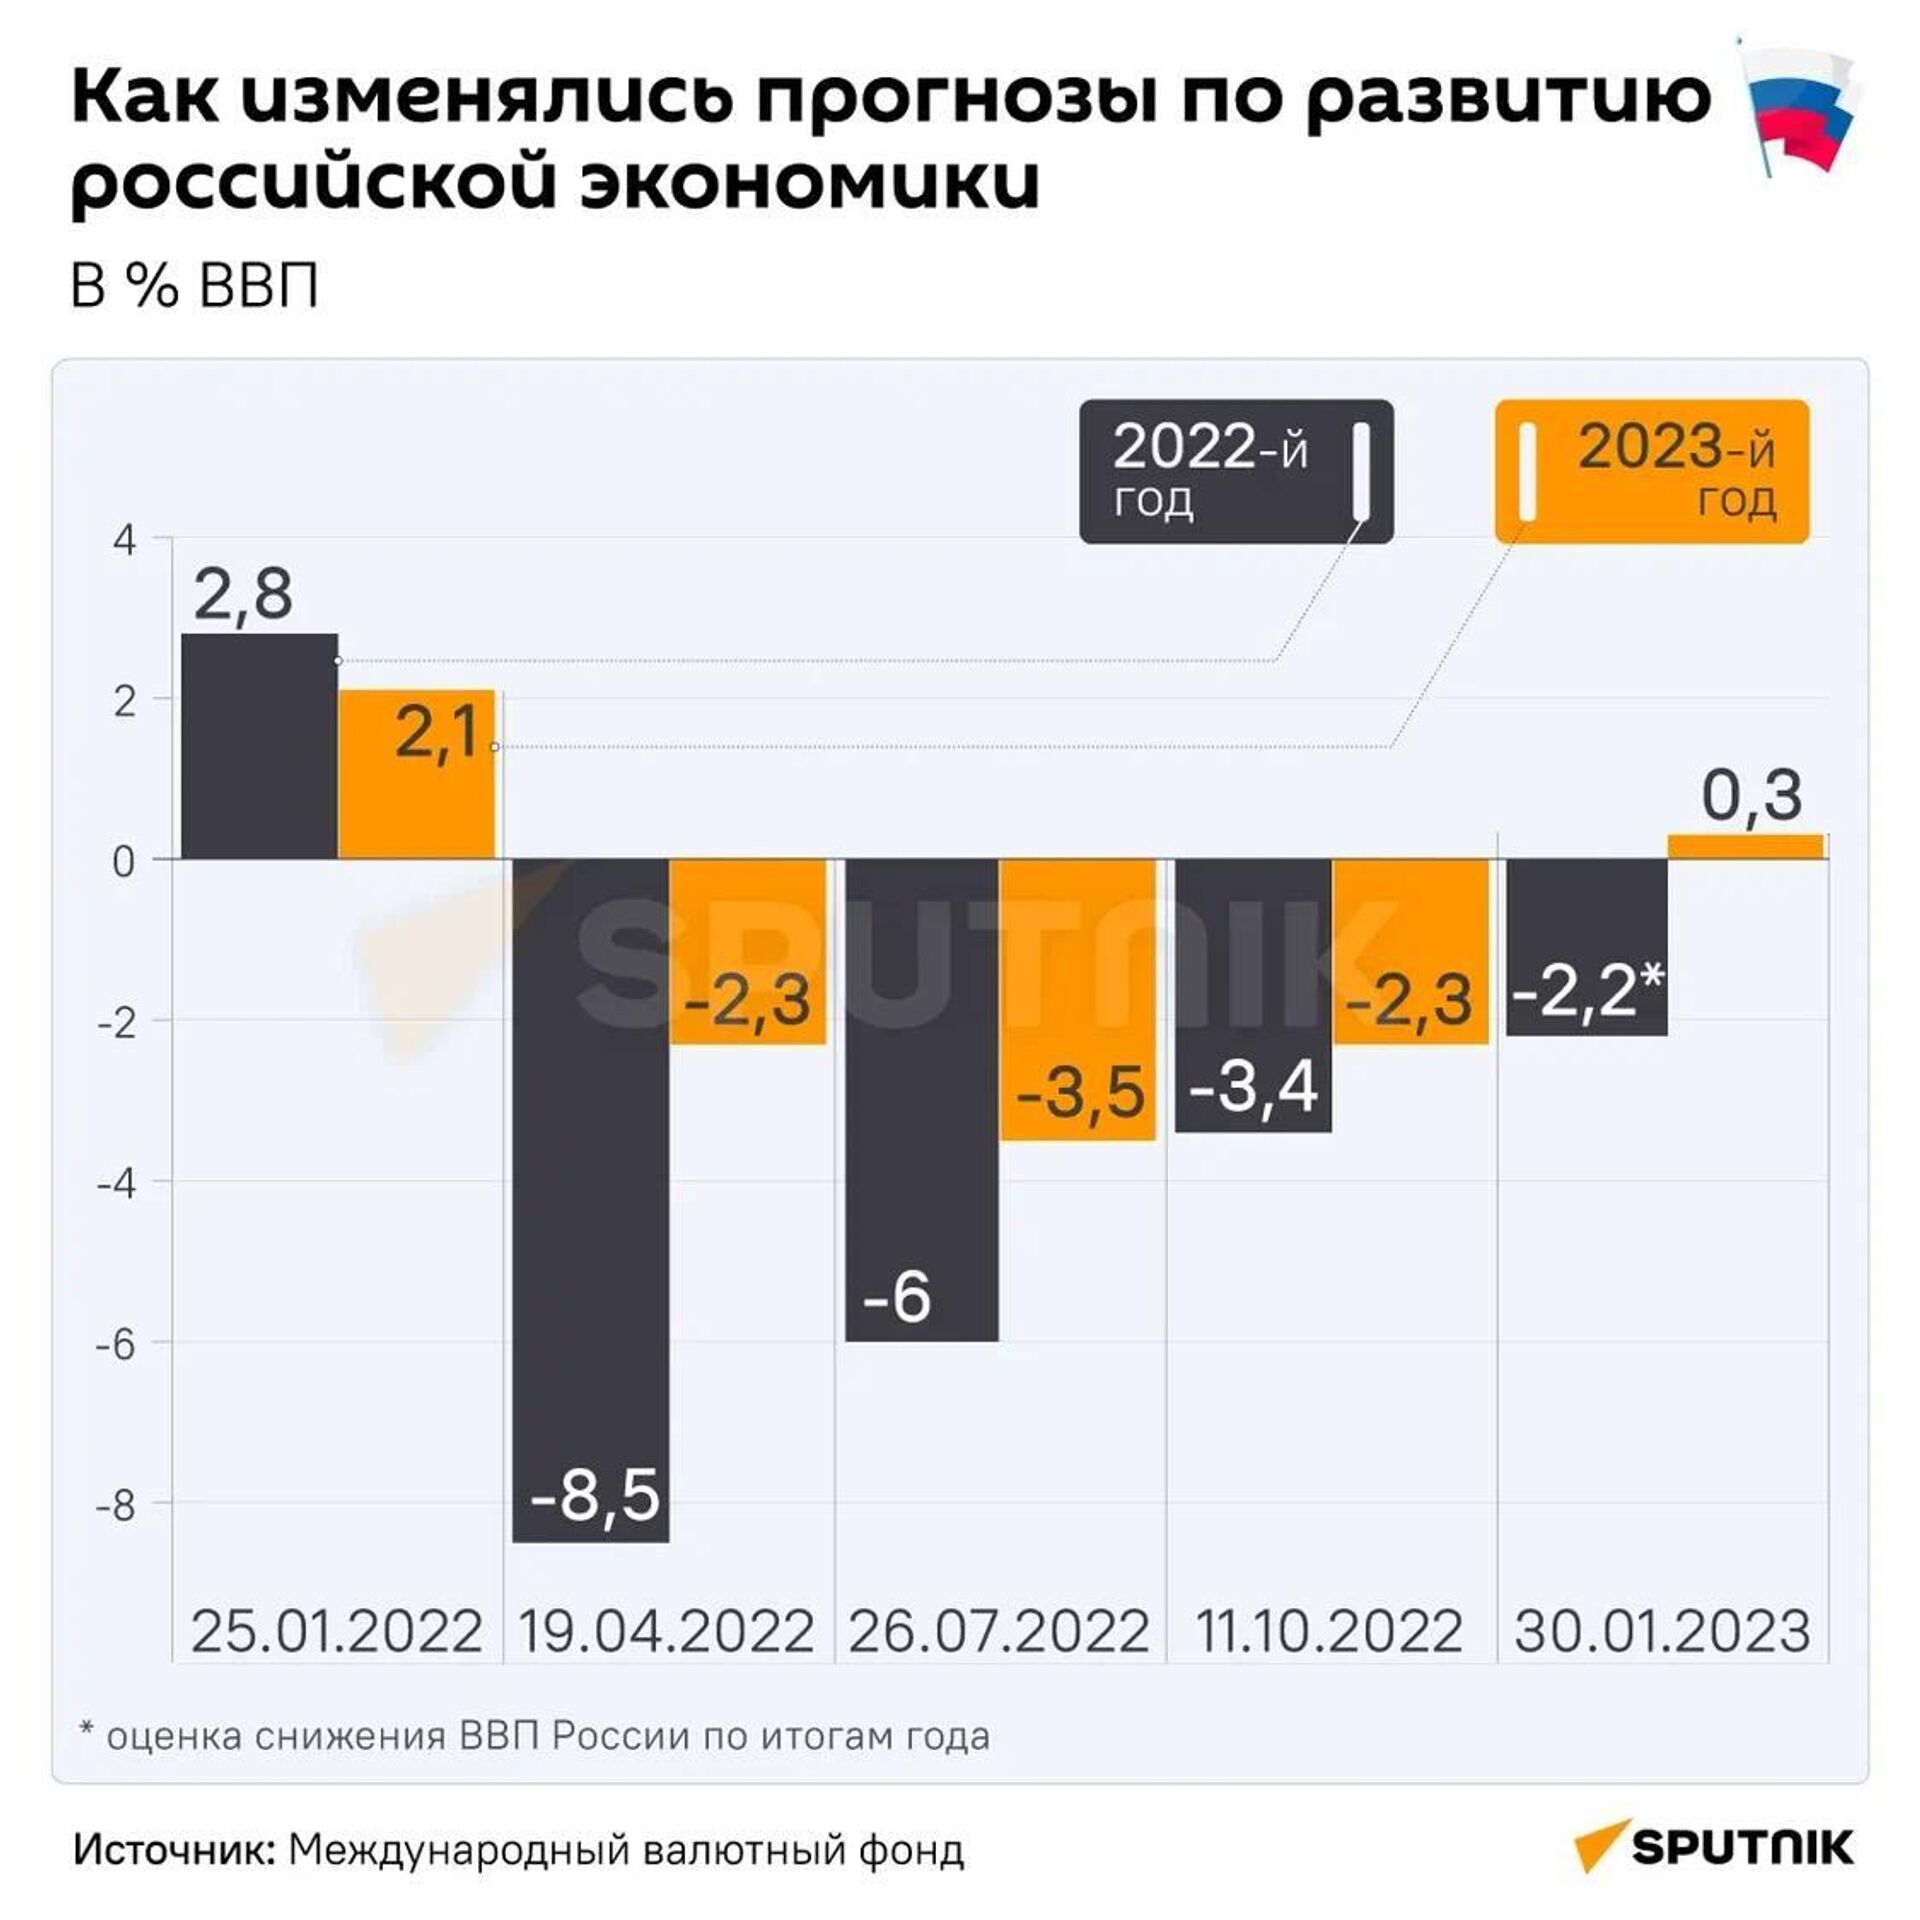 Как изменились прогнозы по развитию российской экономики  - Sputnik Абхазия, 1920, 22.02.2023